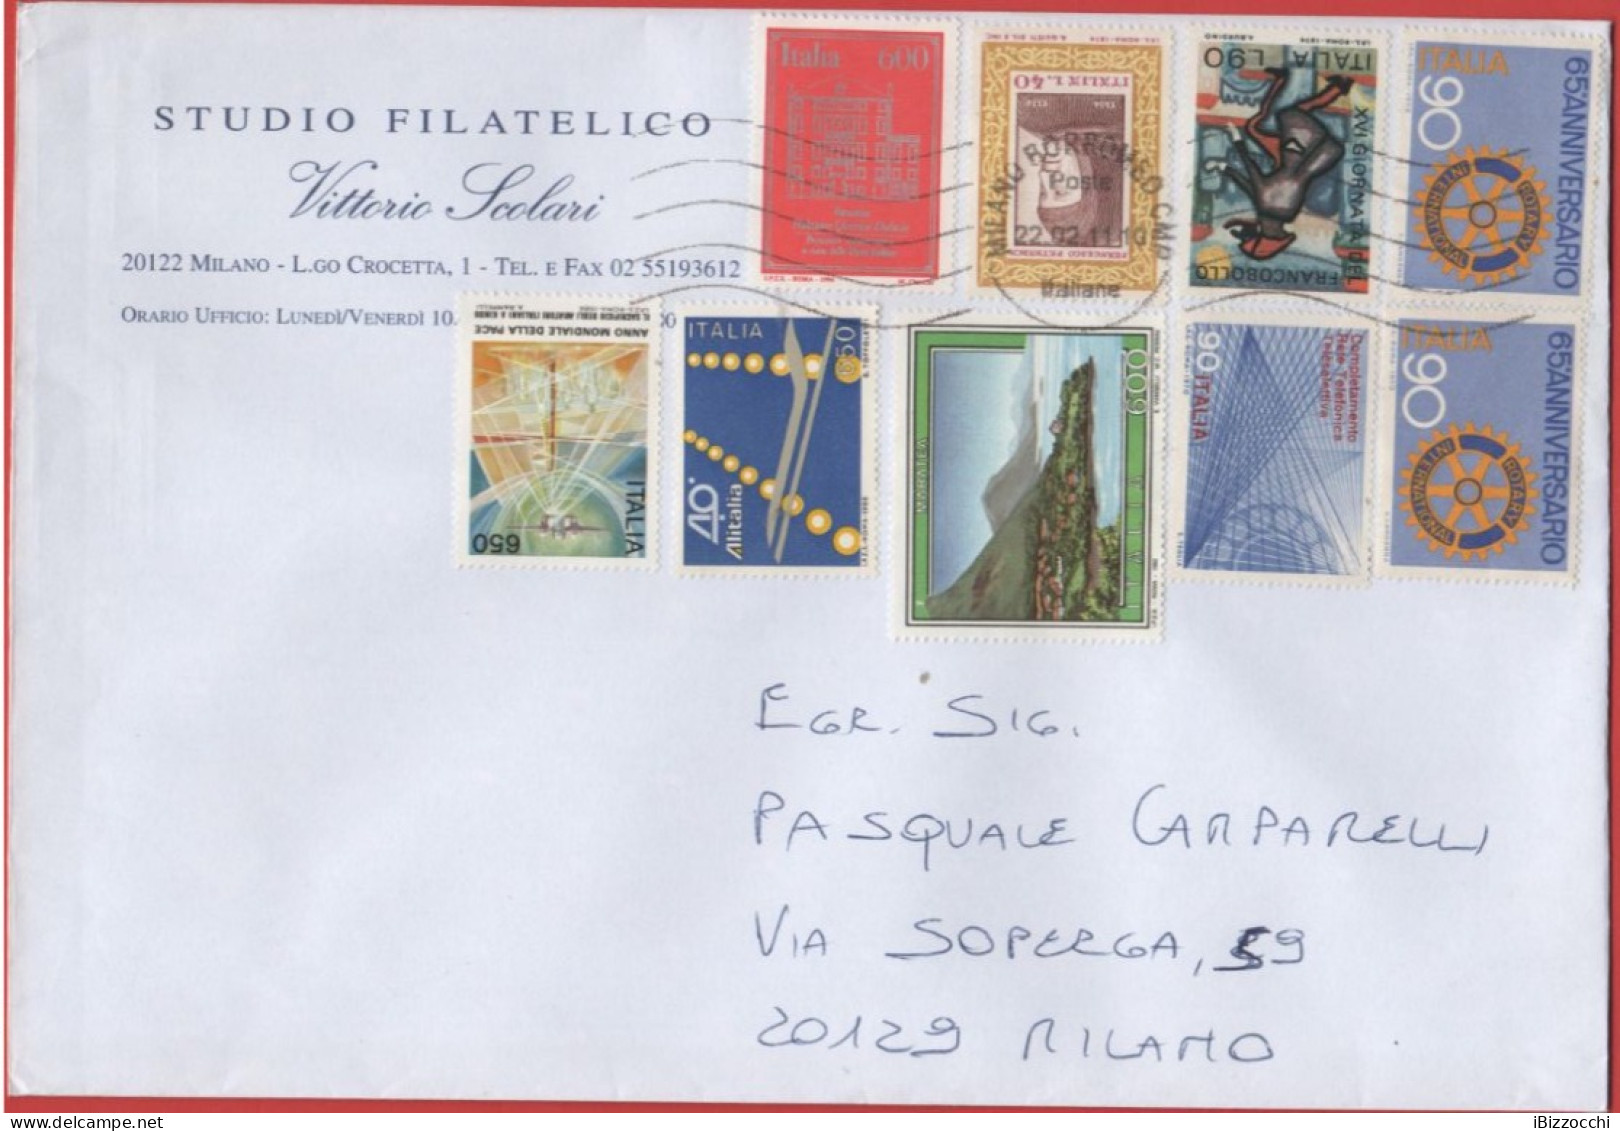 ITALIA - Storia Postale Repubblica - 2011 - 9 Francobolli Dal 1974 Al 1994 - Studio Filatelico Scolari Vittorio - Viaggi - 2011-20: Marcofilie